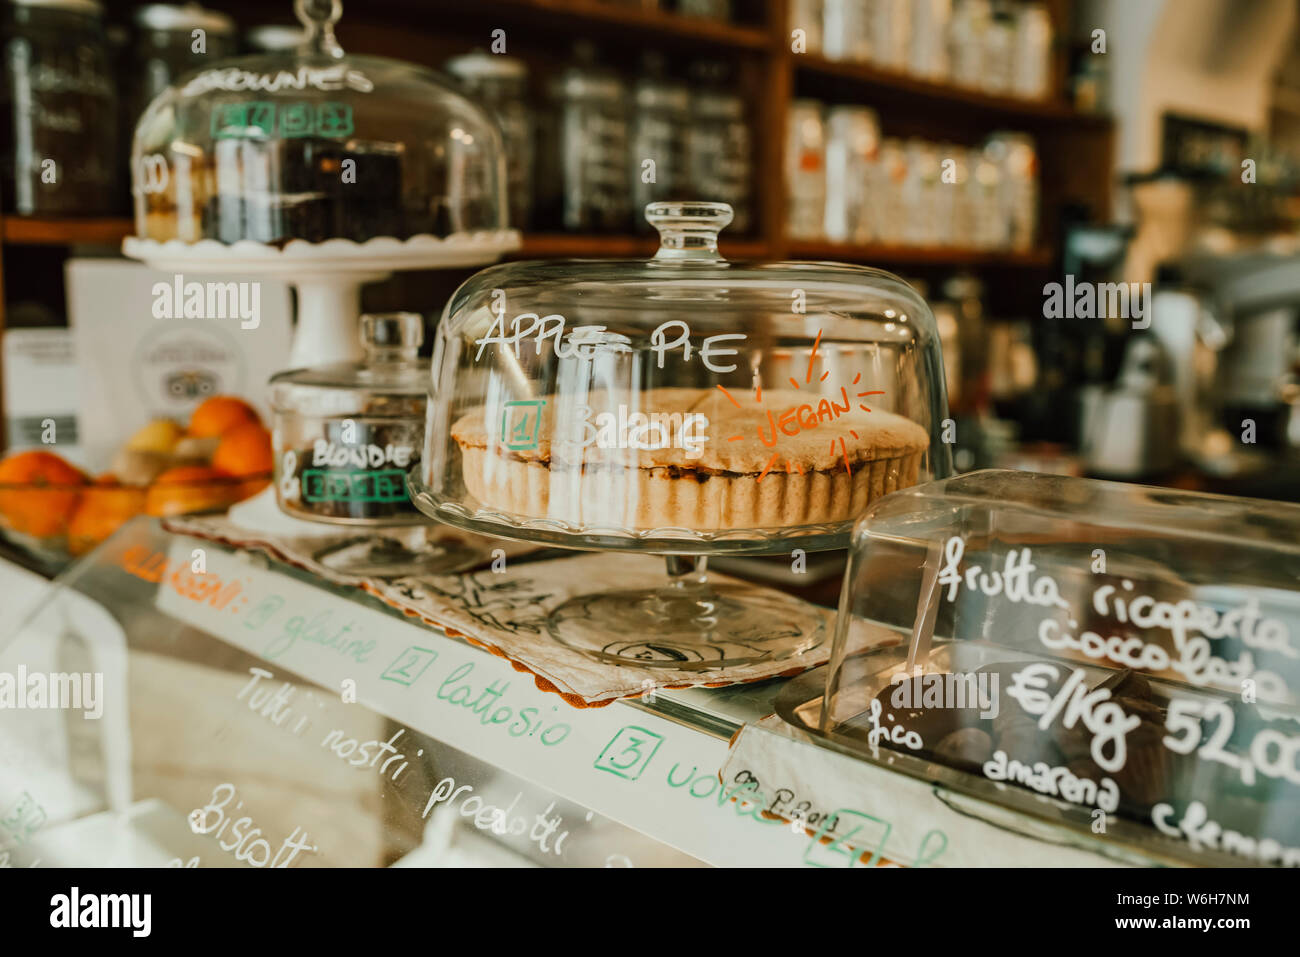 Visualización de golosinas detrás de vidrio en una panadería; Italia Foto de stock